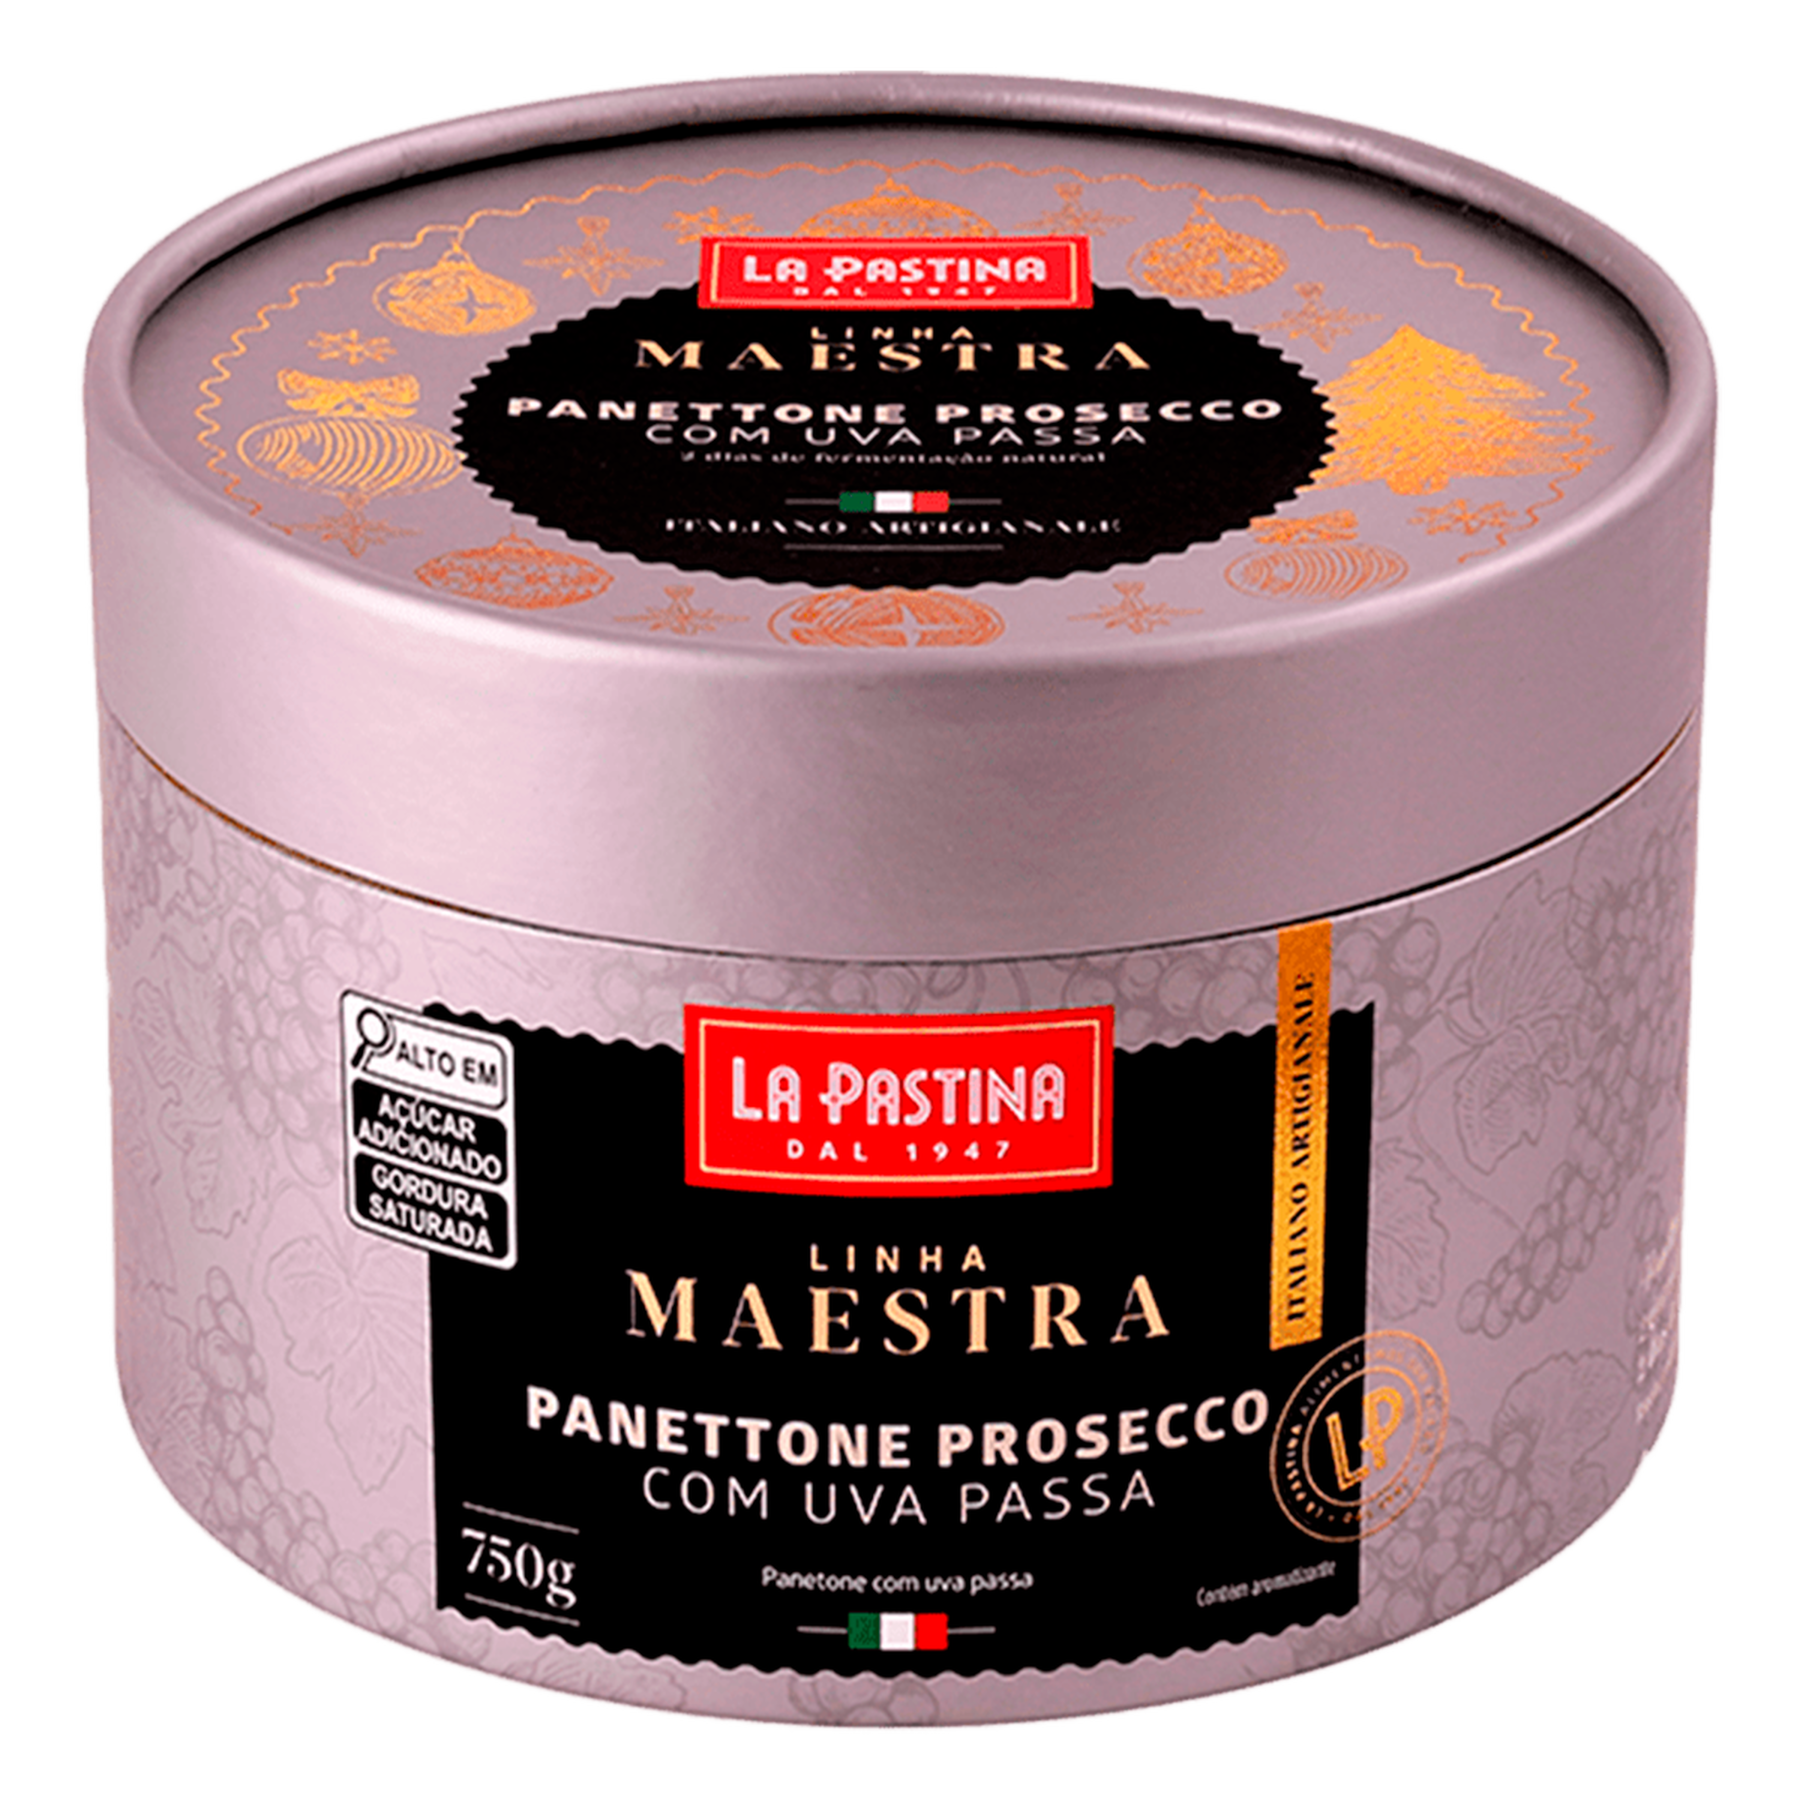 Panettone Prosecco Maestra La Pastina 750g